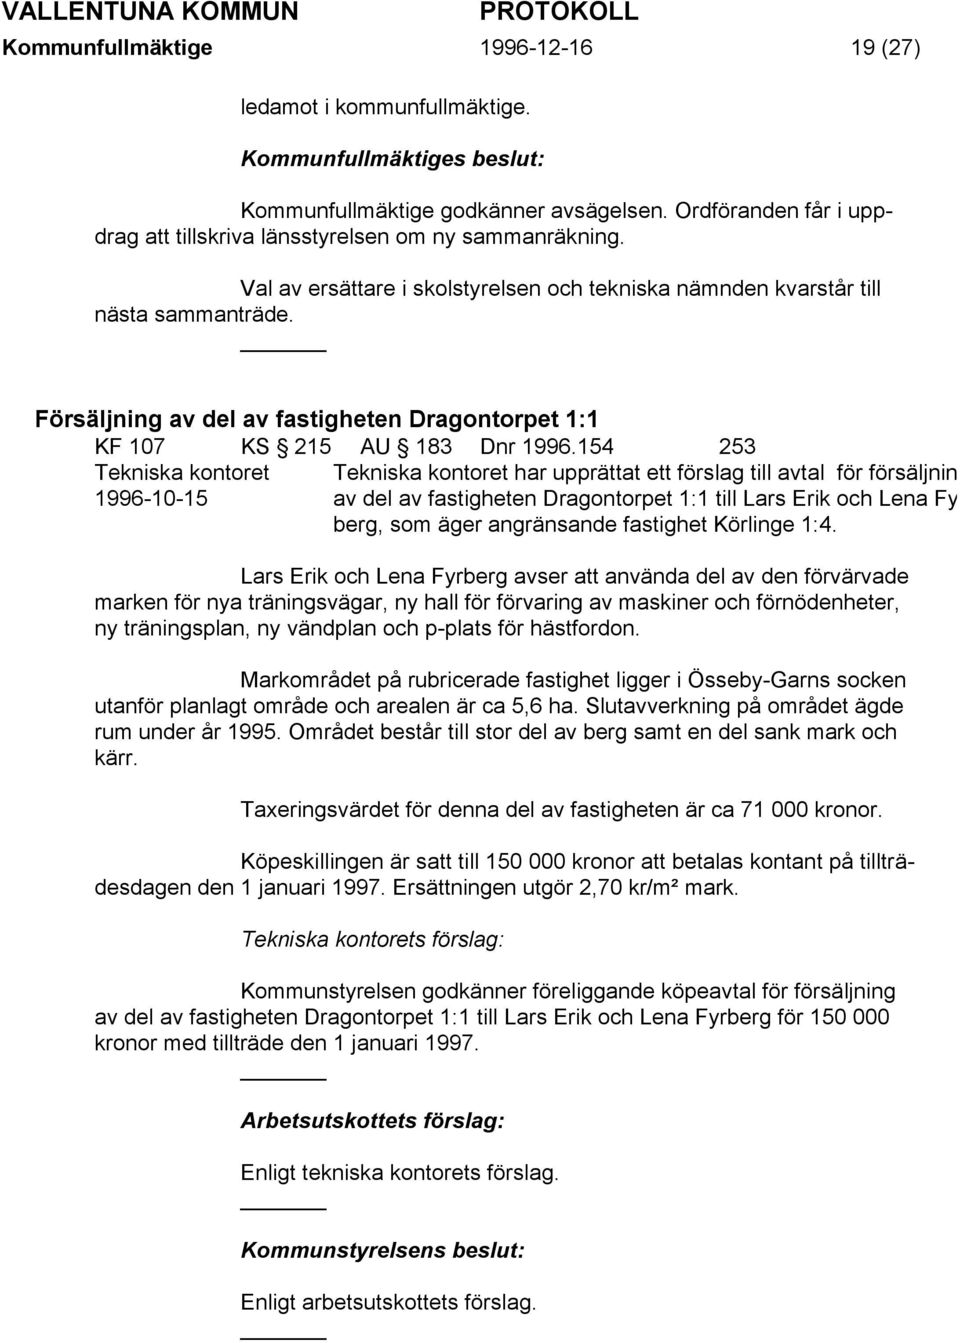 154 253 Tekniska kontoret 1996-10-15 Tekniska kontoret har upprättat ett förslag till avtal för försäljning av del av fastigheten Dragontorpet 1:1 till Lars Erik och Lena Fy berg, som äger